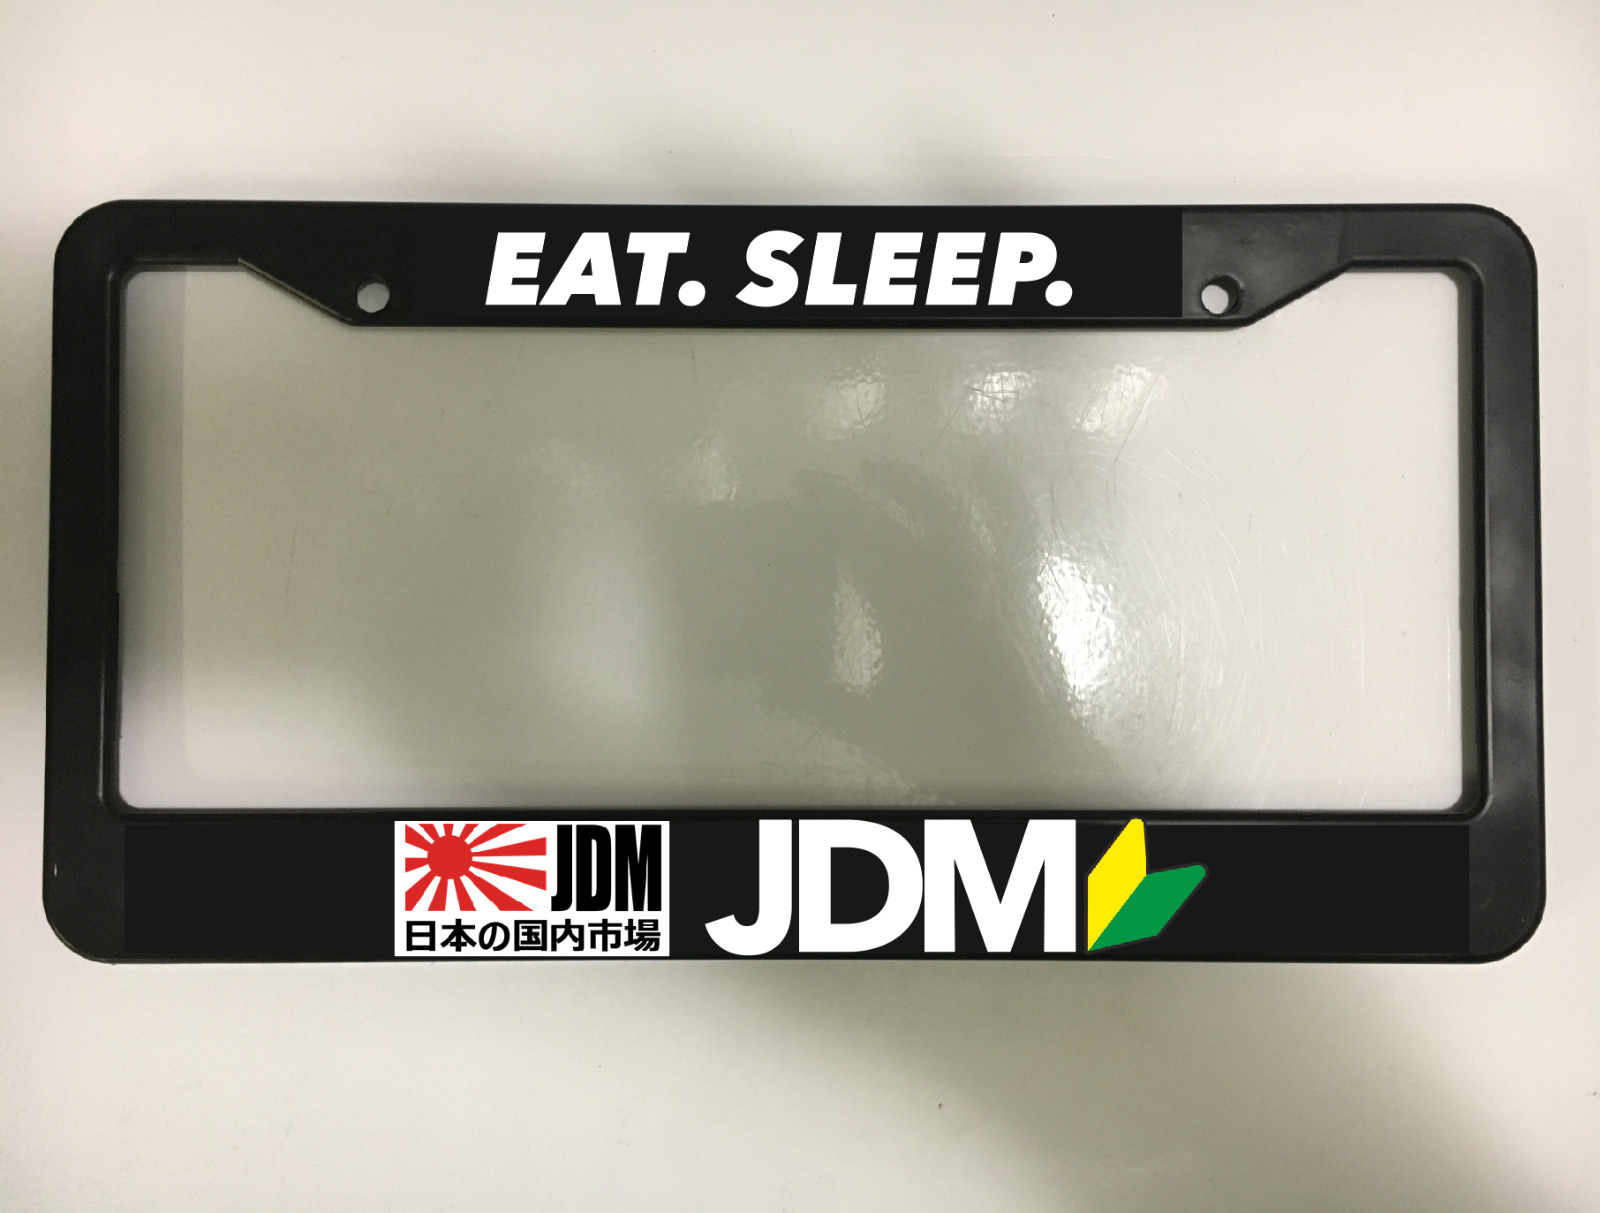 EAT SLEEP JDM WAKABA JAPANESE JAPAN DRIFT TUNER Black License Plate Frame NEW